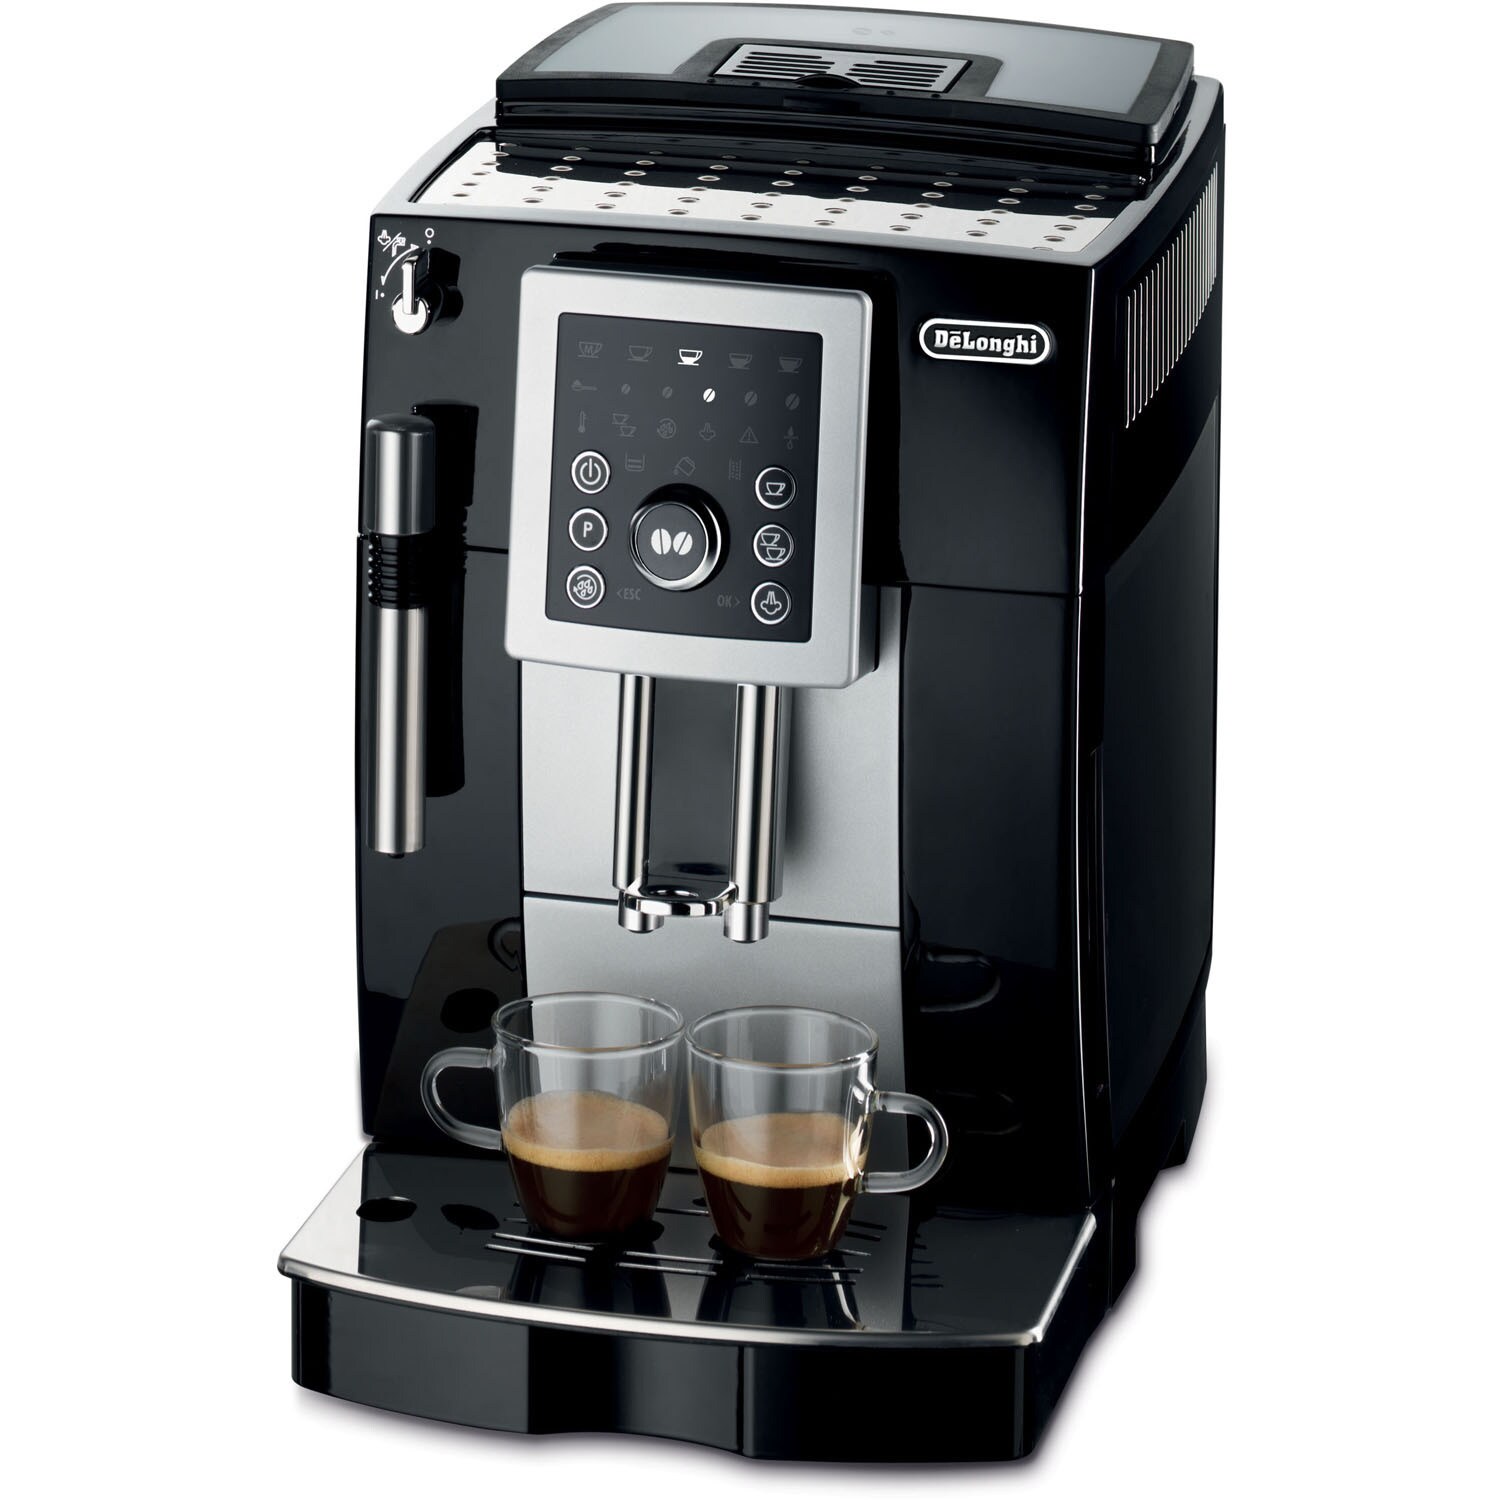 https://ak1.ostkcdn.com/images/products/11930010/DeLonghi-ECAM23210B-Super-Automatic-Espresso-Maker-0f5b48f8-9721-4937-a0cf-b40284fd0fbd.jpg